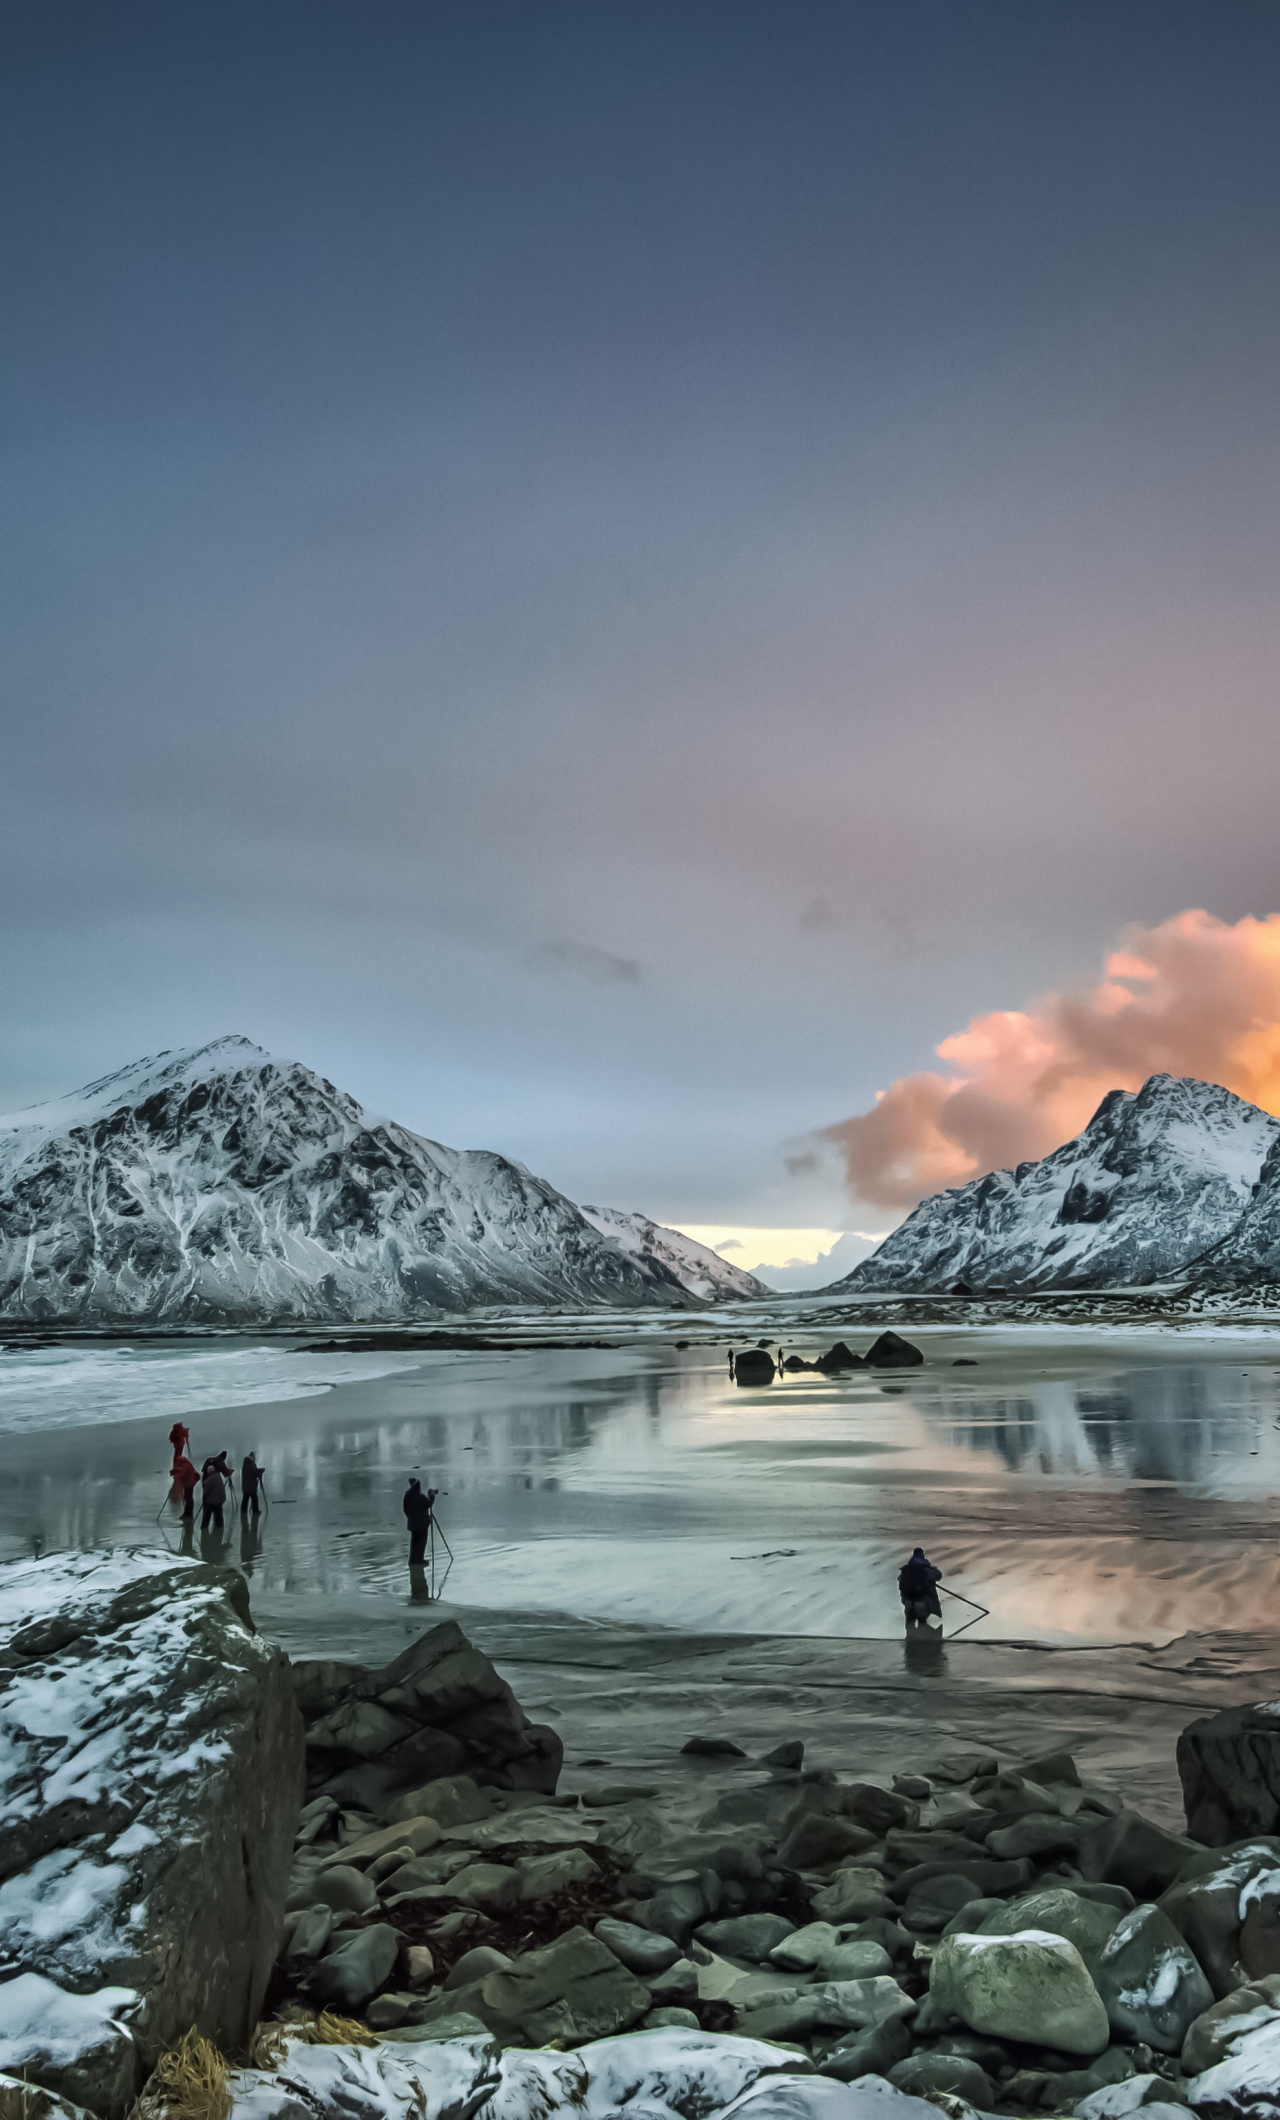 Download Lake, sunset, winter, mountains wallpaper, 1280x iPhone 6 Plus